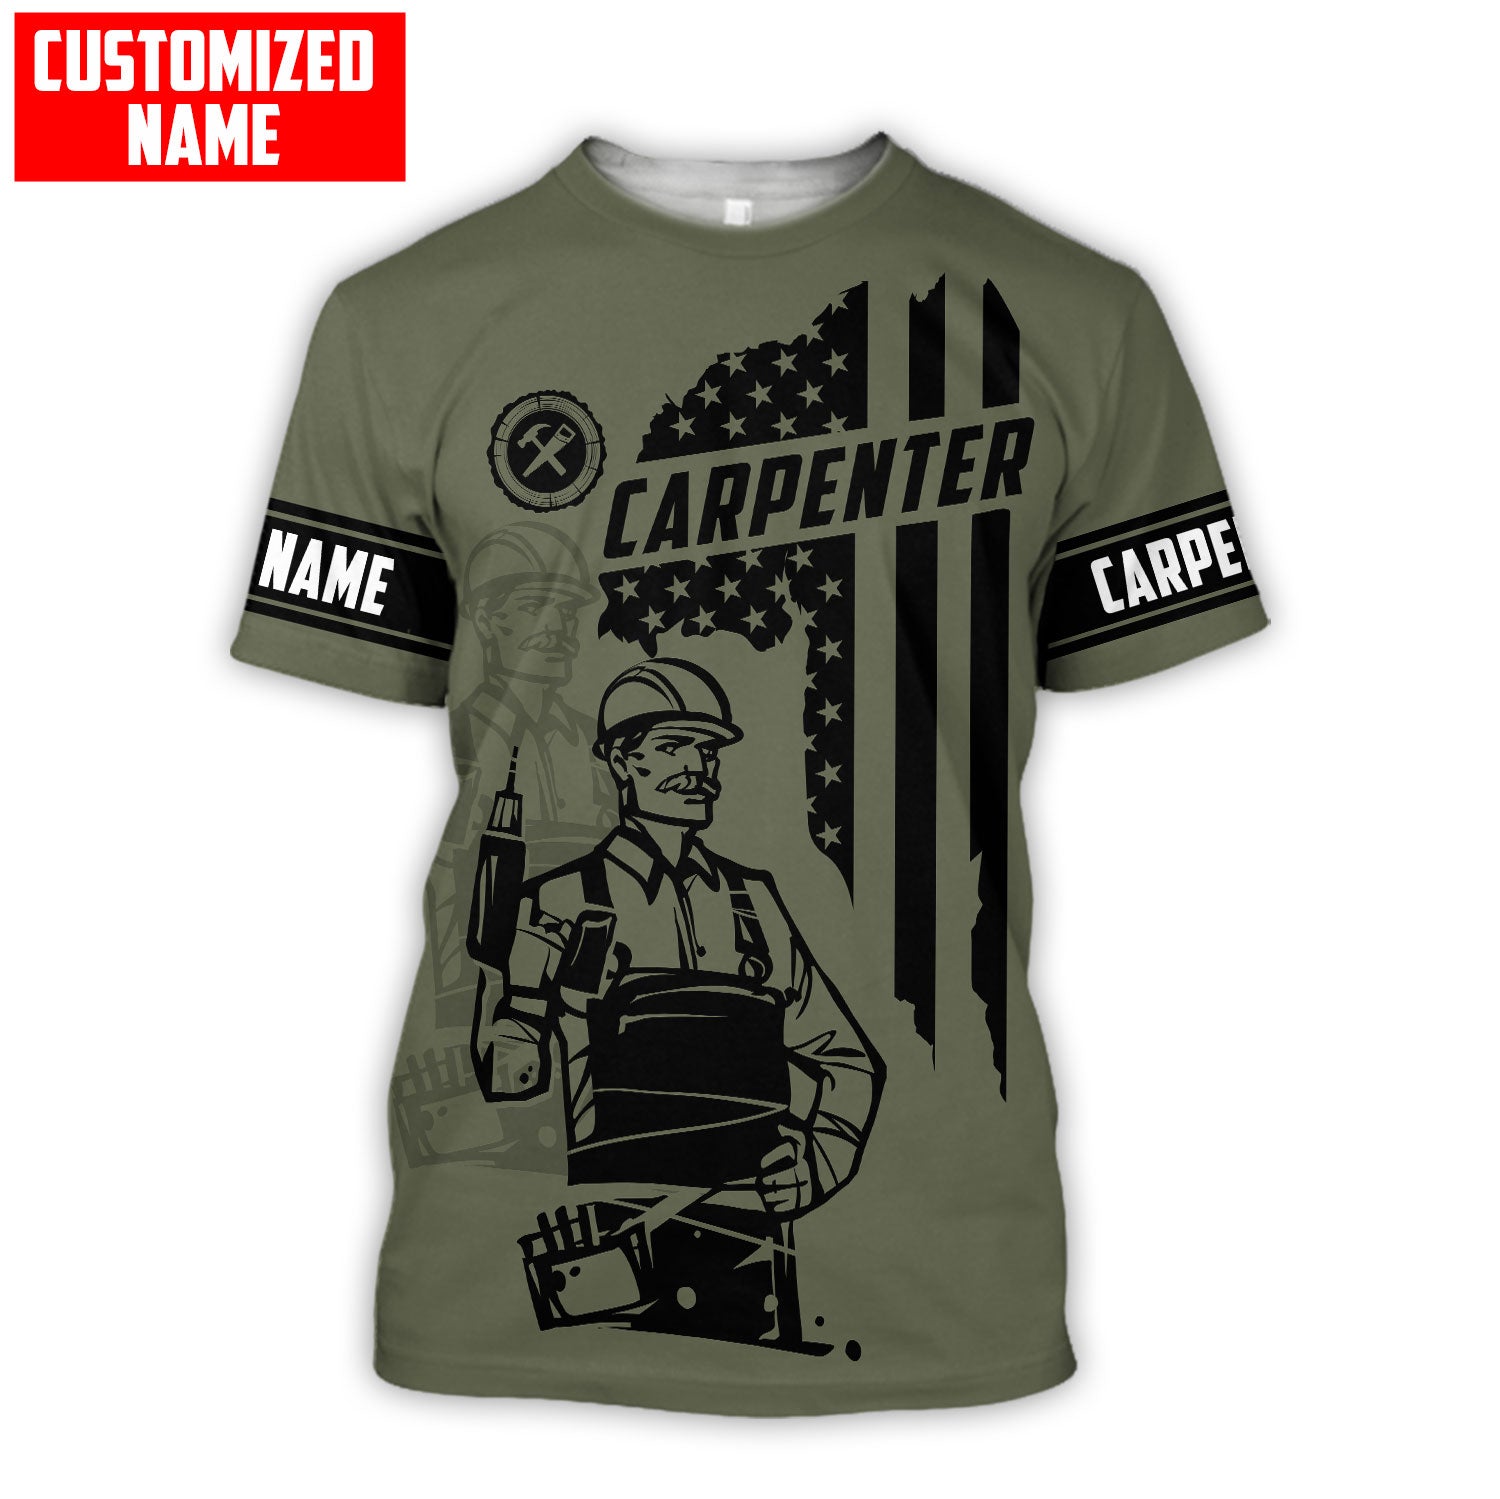 Customized Name Carpenter Shirts American Flag Pattern Proud Of Carpenter Shirts